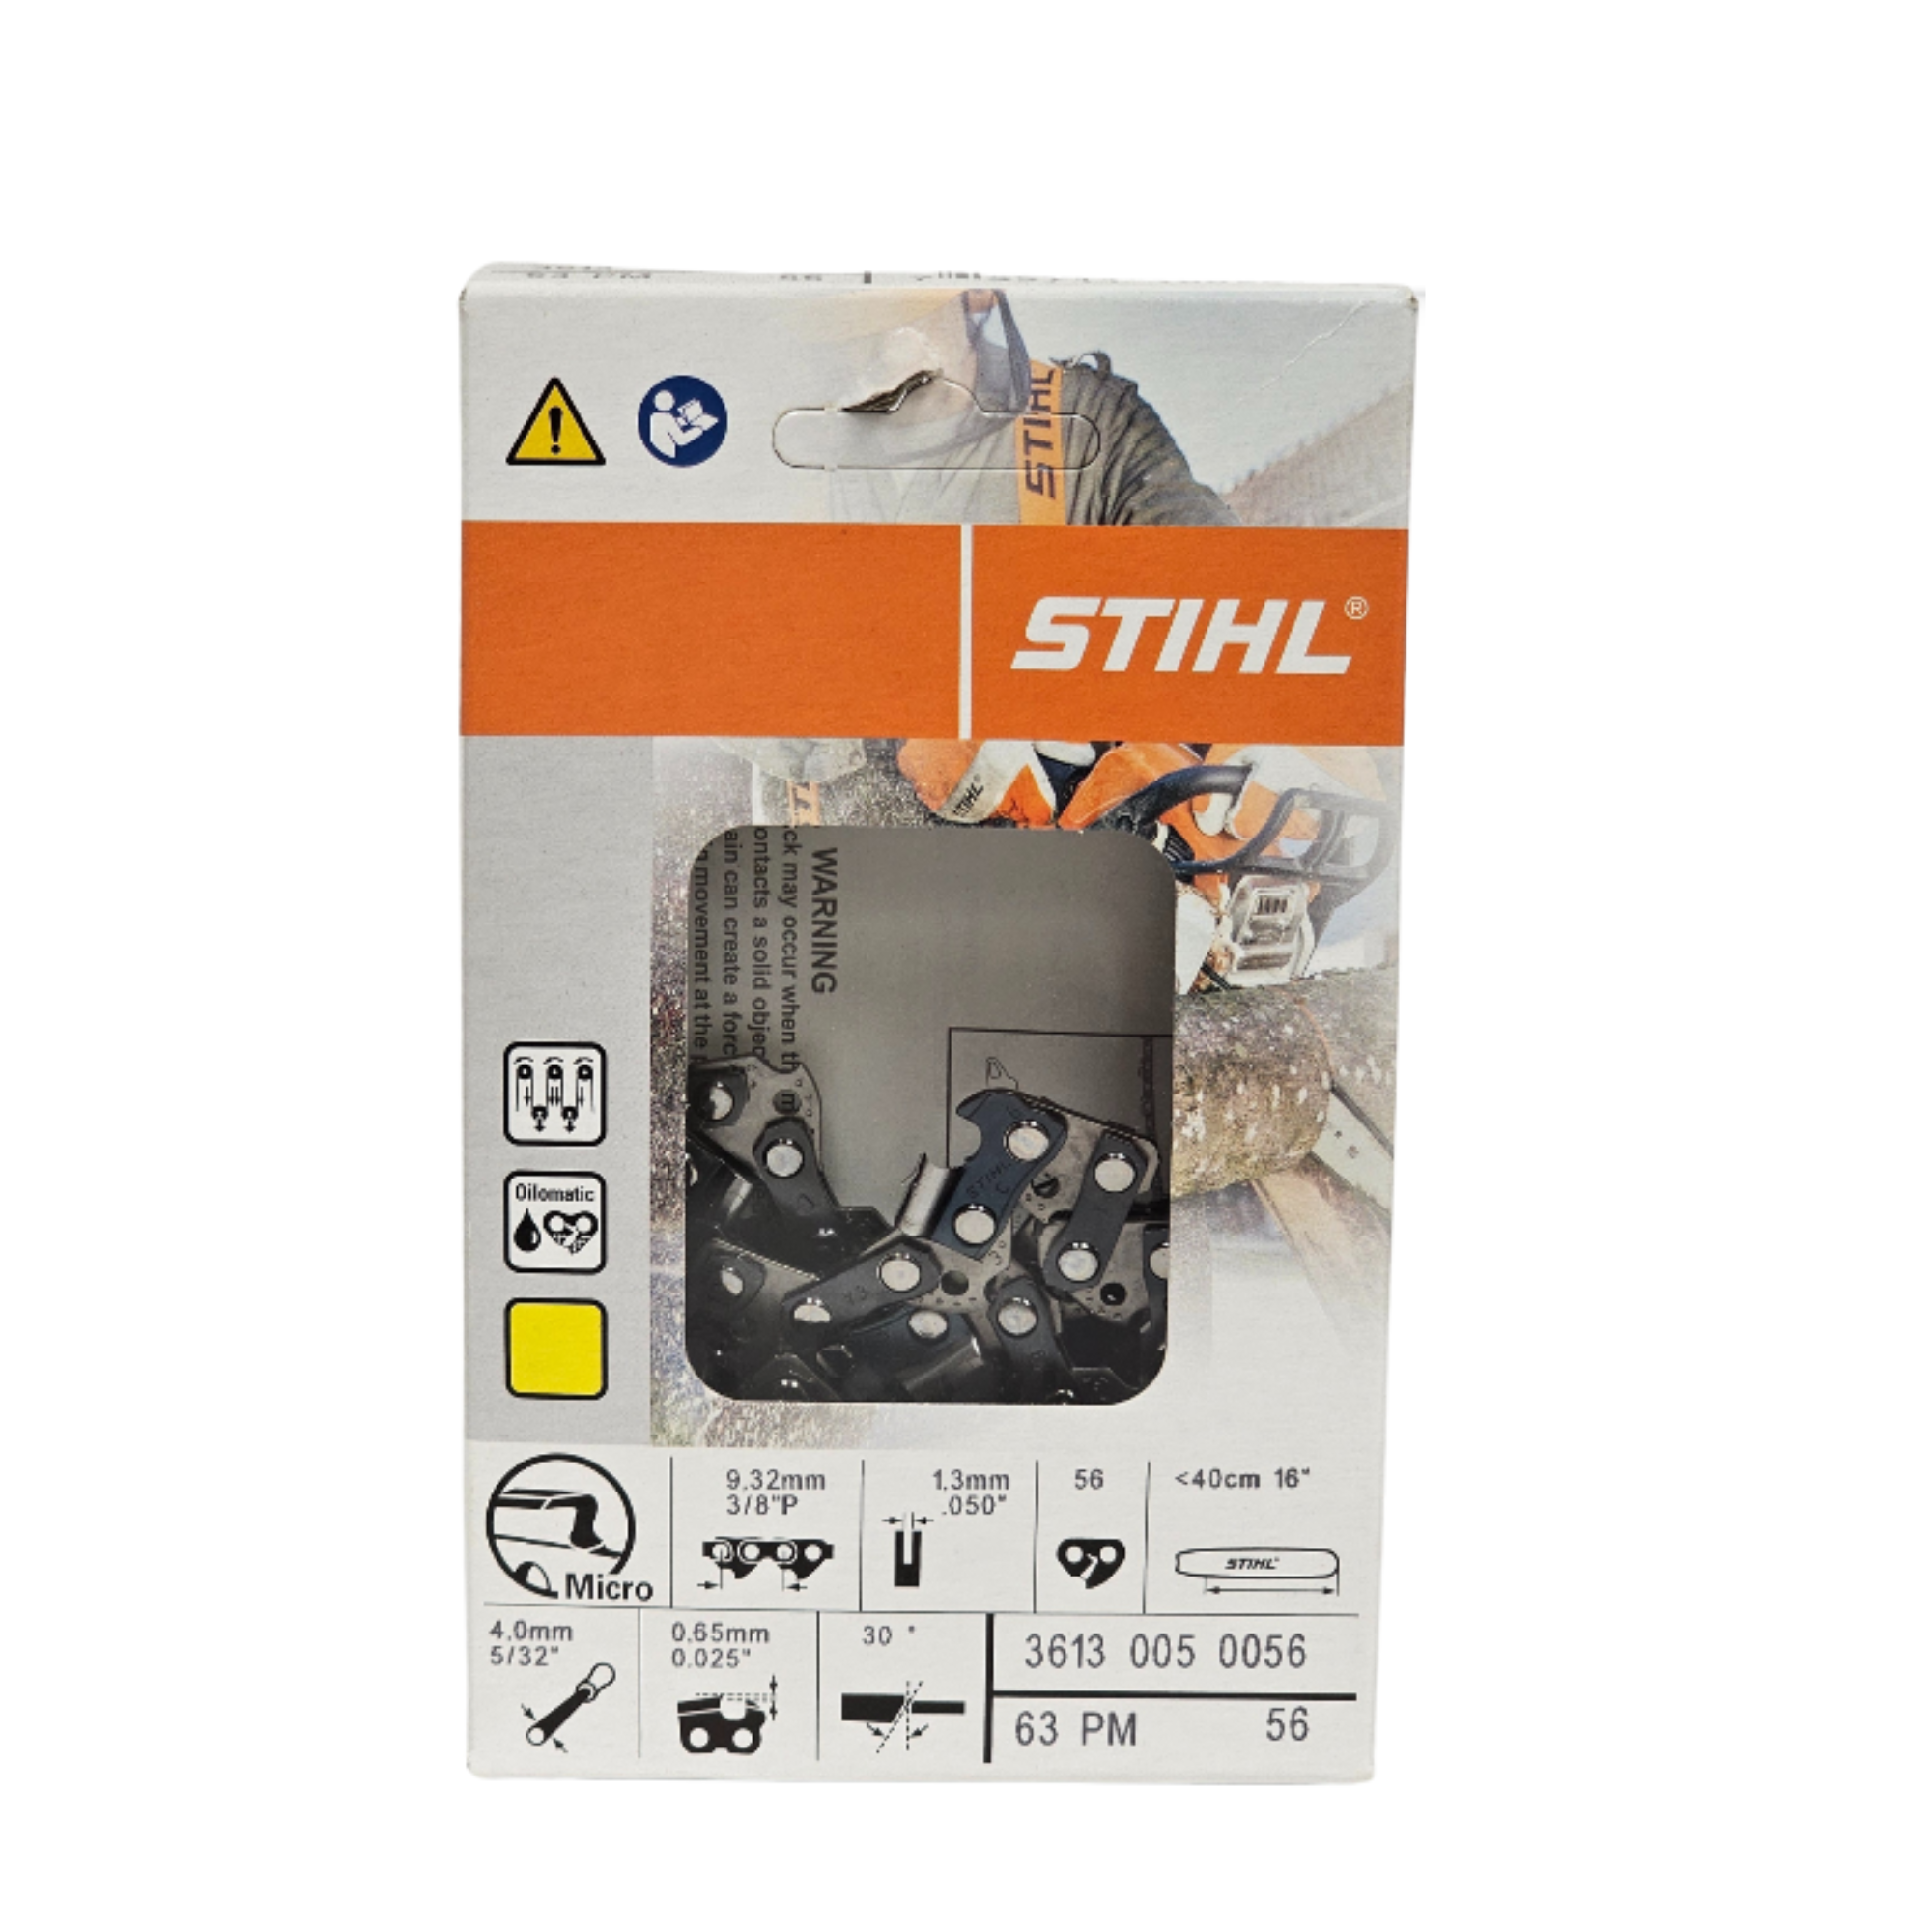 STIHL Oilomatic Picco Micro | 63 PM 56 | 16 in. | 56 Drive Links | Chainsaw Chain | 3613 005 0056